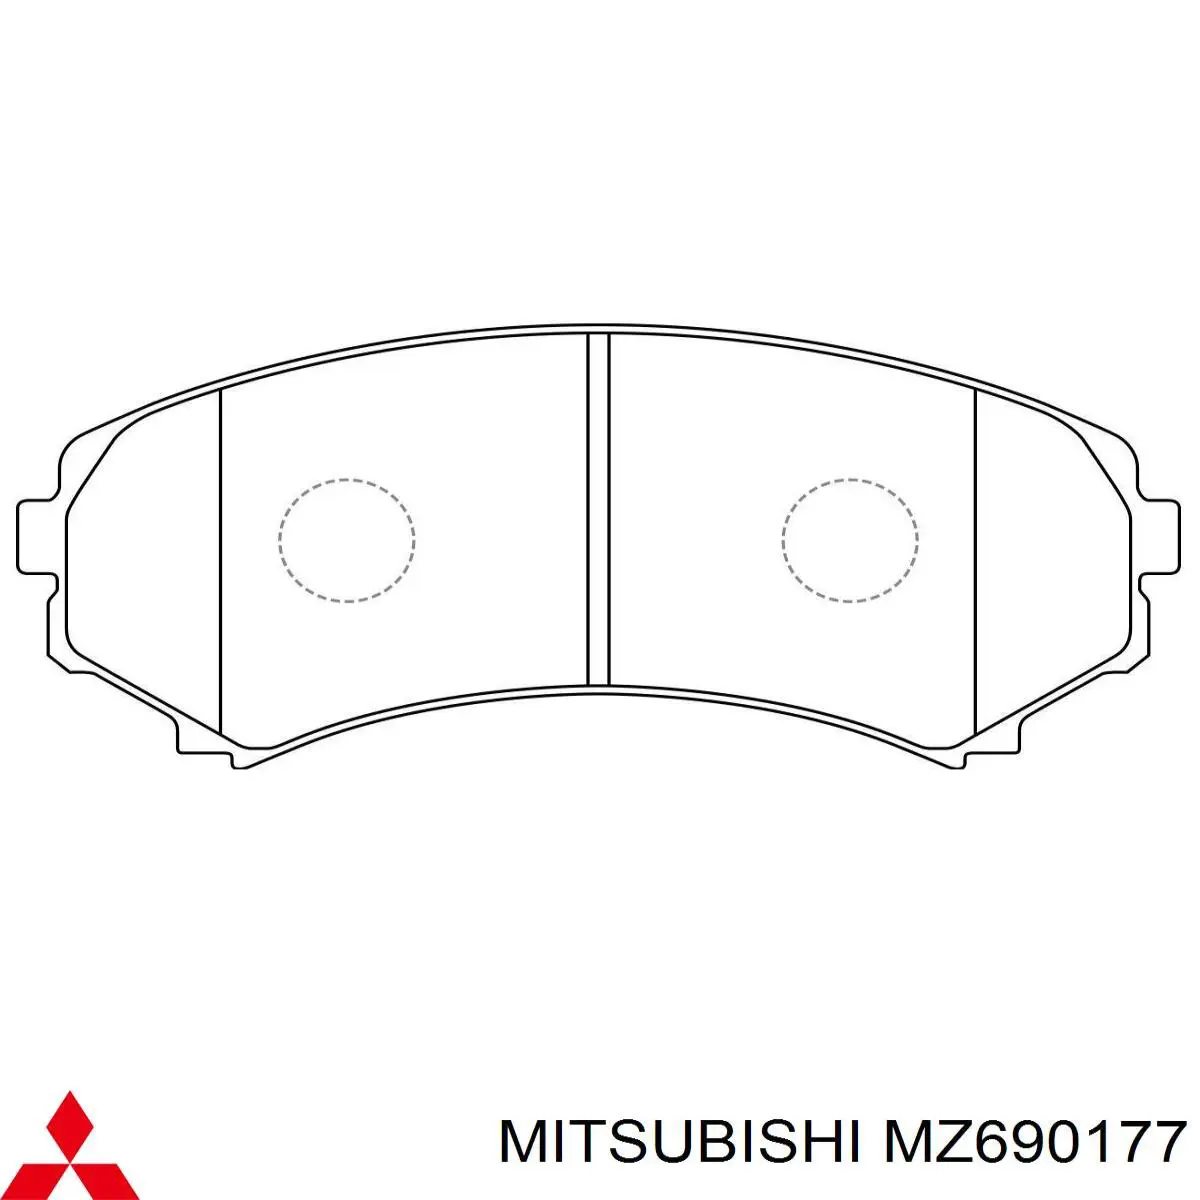 MZ690177 Mitsubishi колодки тормозные передние дисковые